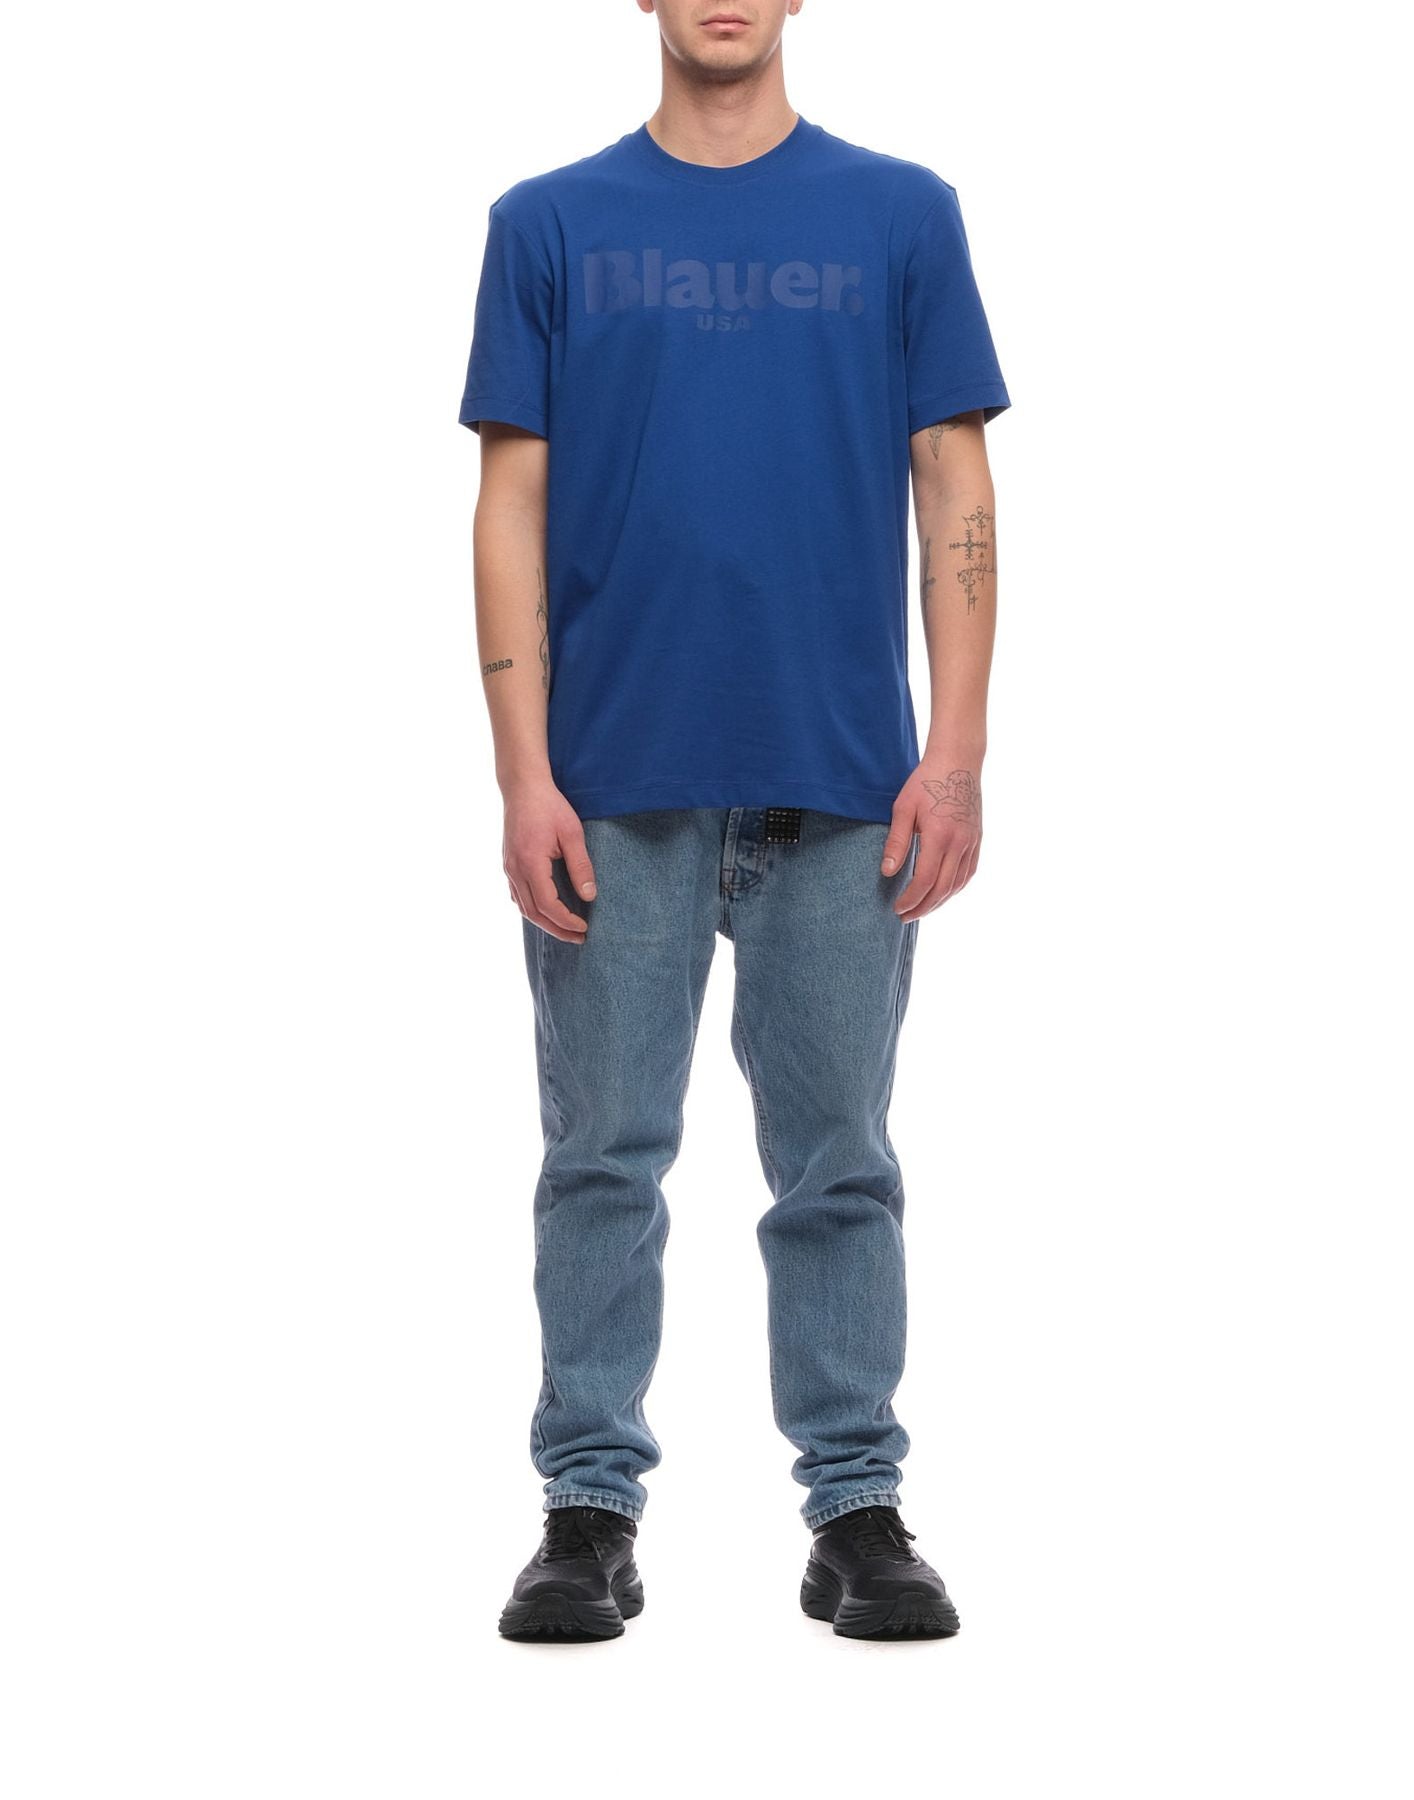 T-shirt pour l'homme Bluh02094 004547 772 Blauer